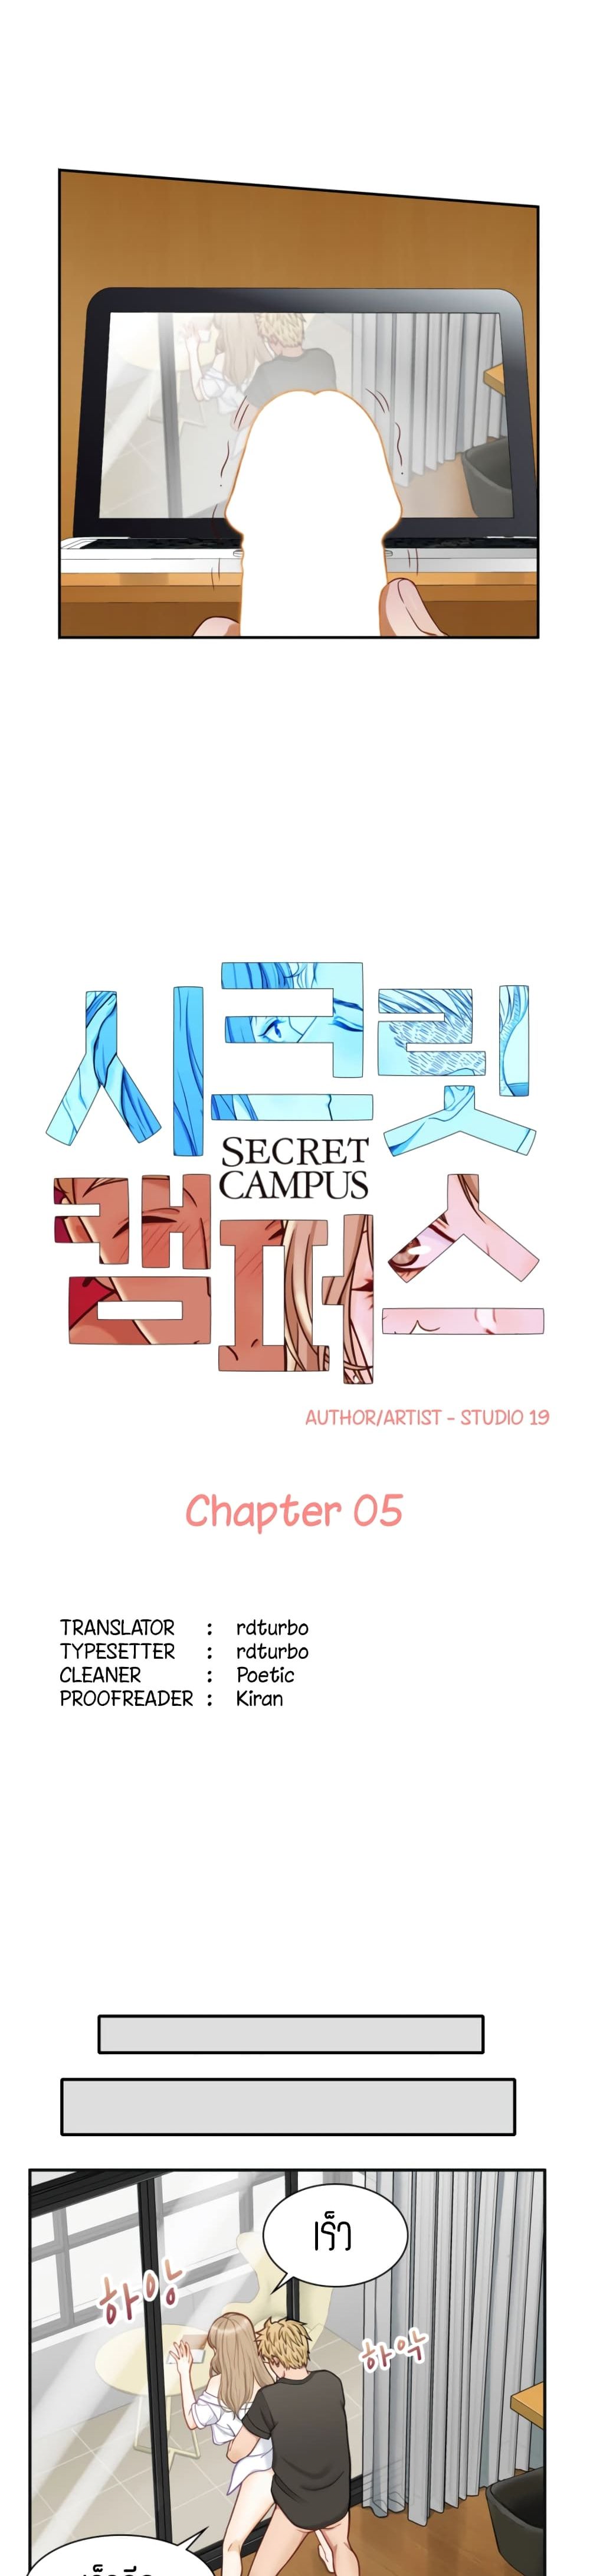 Secret Campus 5 (2)